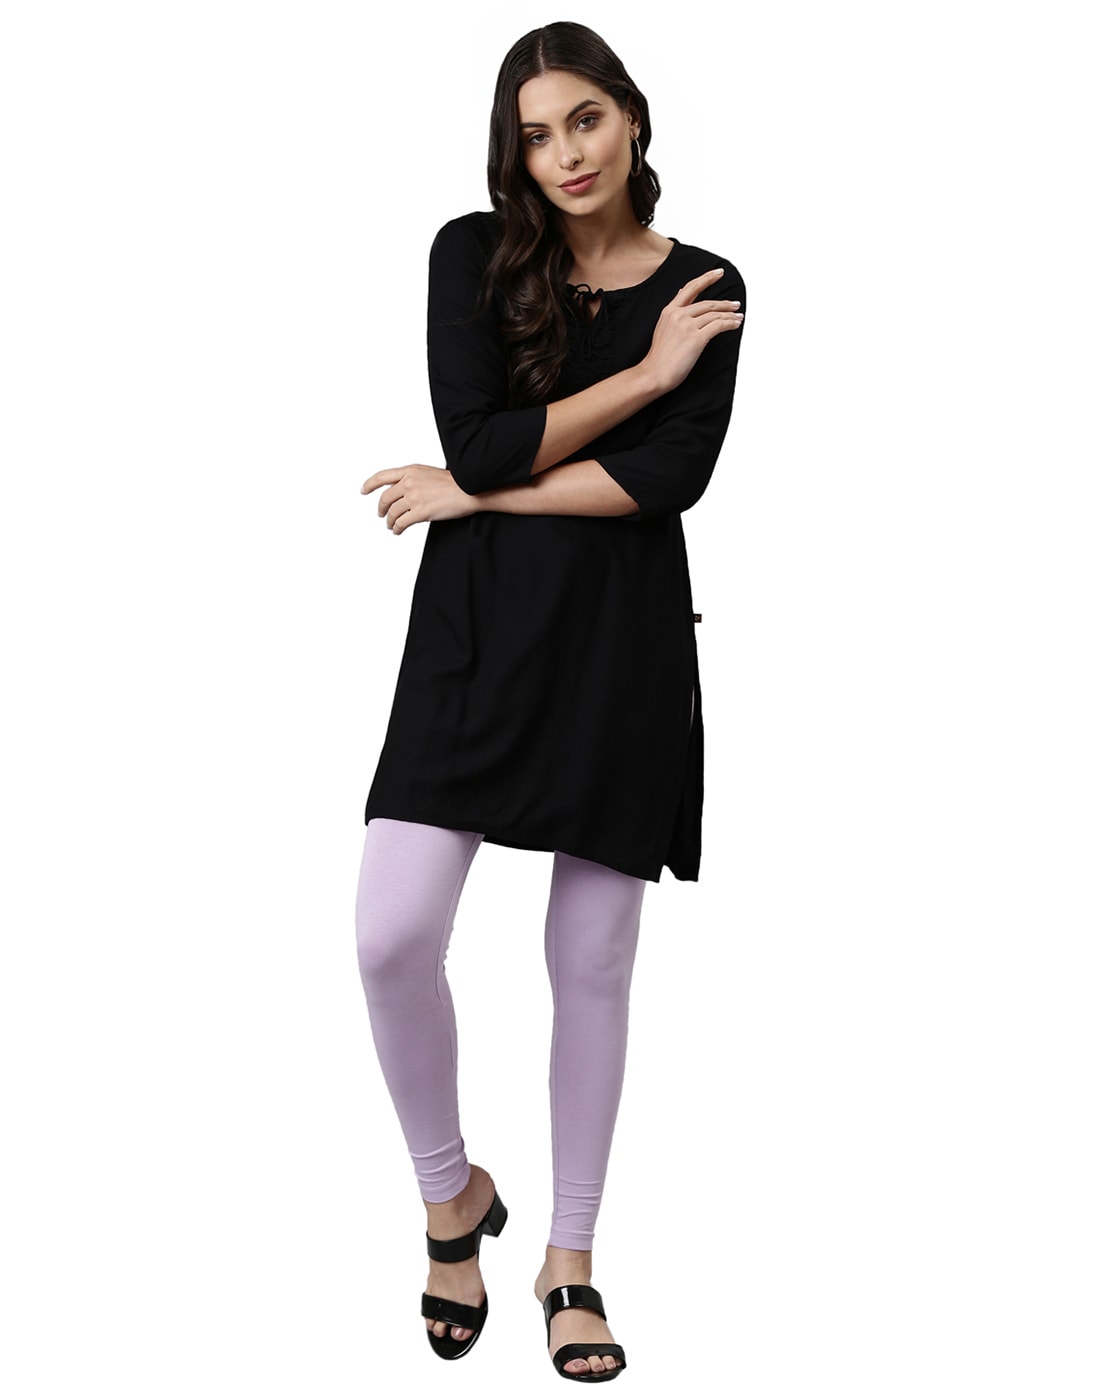 Discover 232+ black dress leggings latest